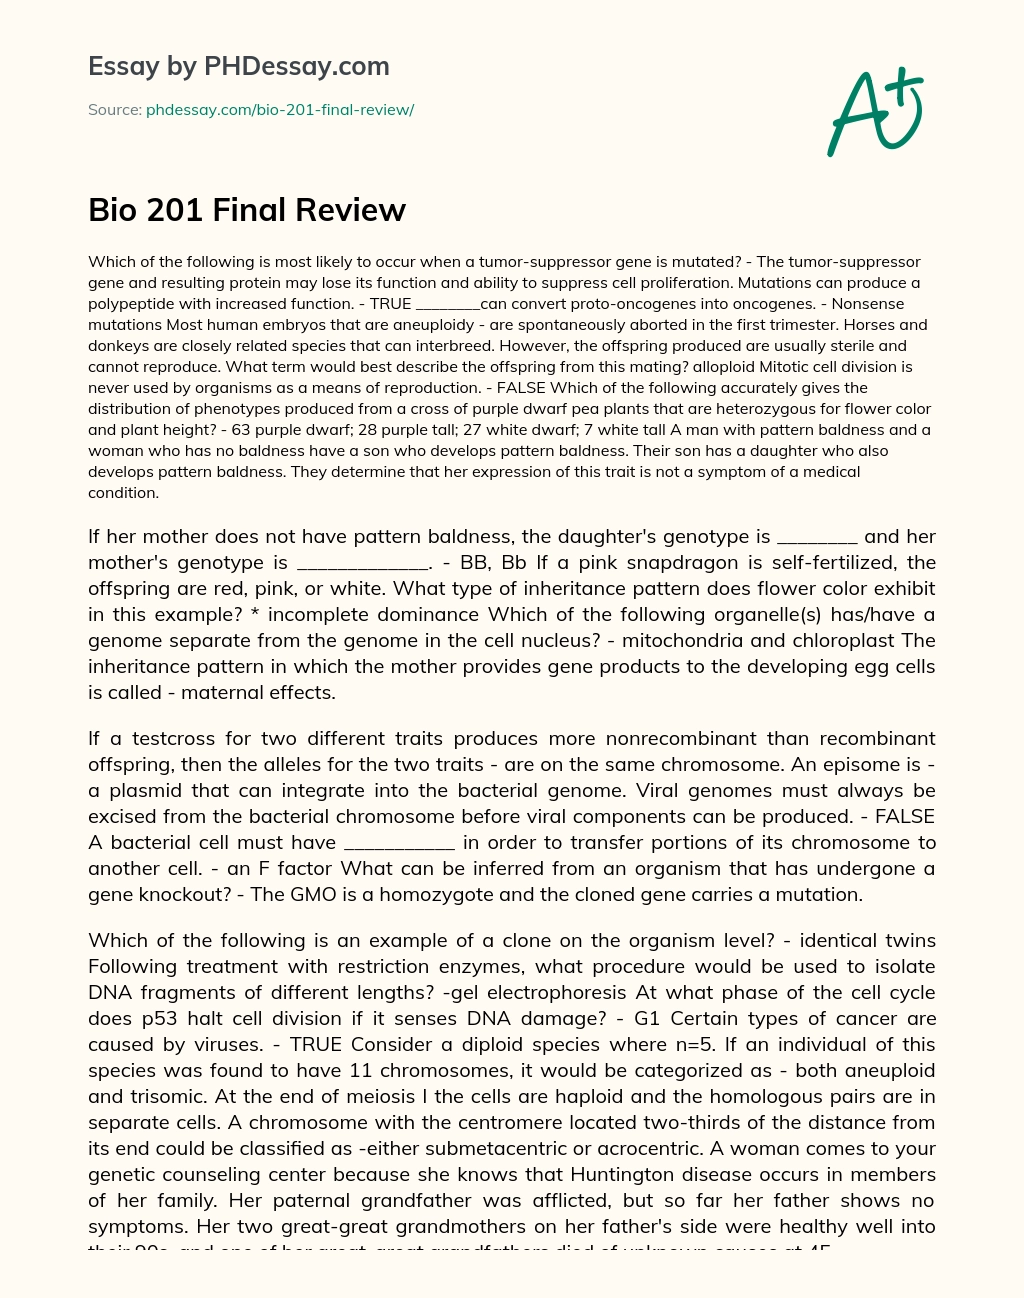 Bio 201 Final Review essay